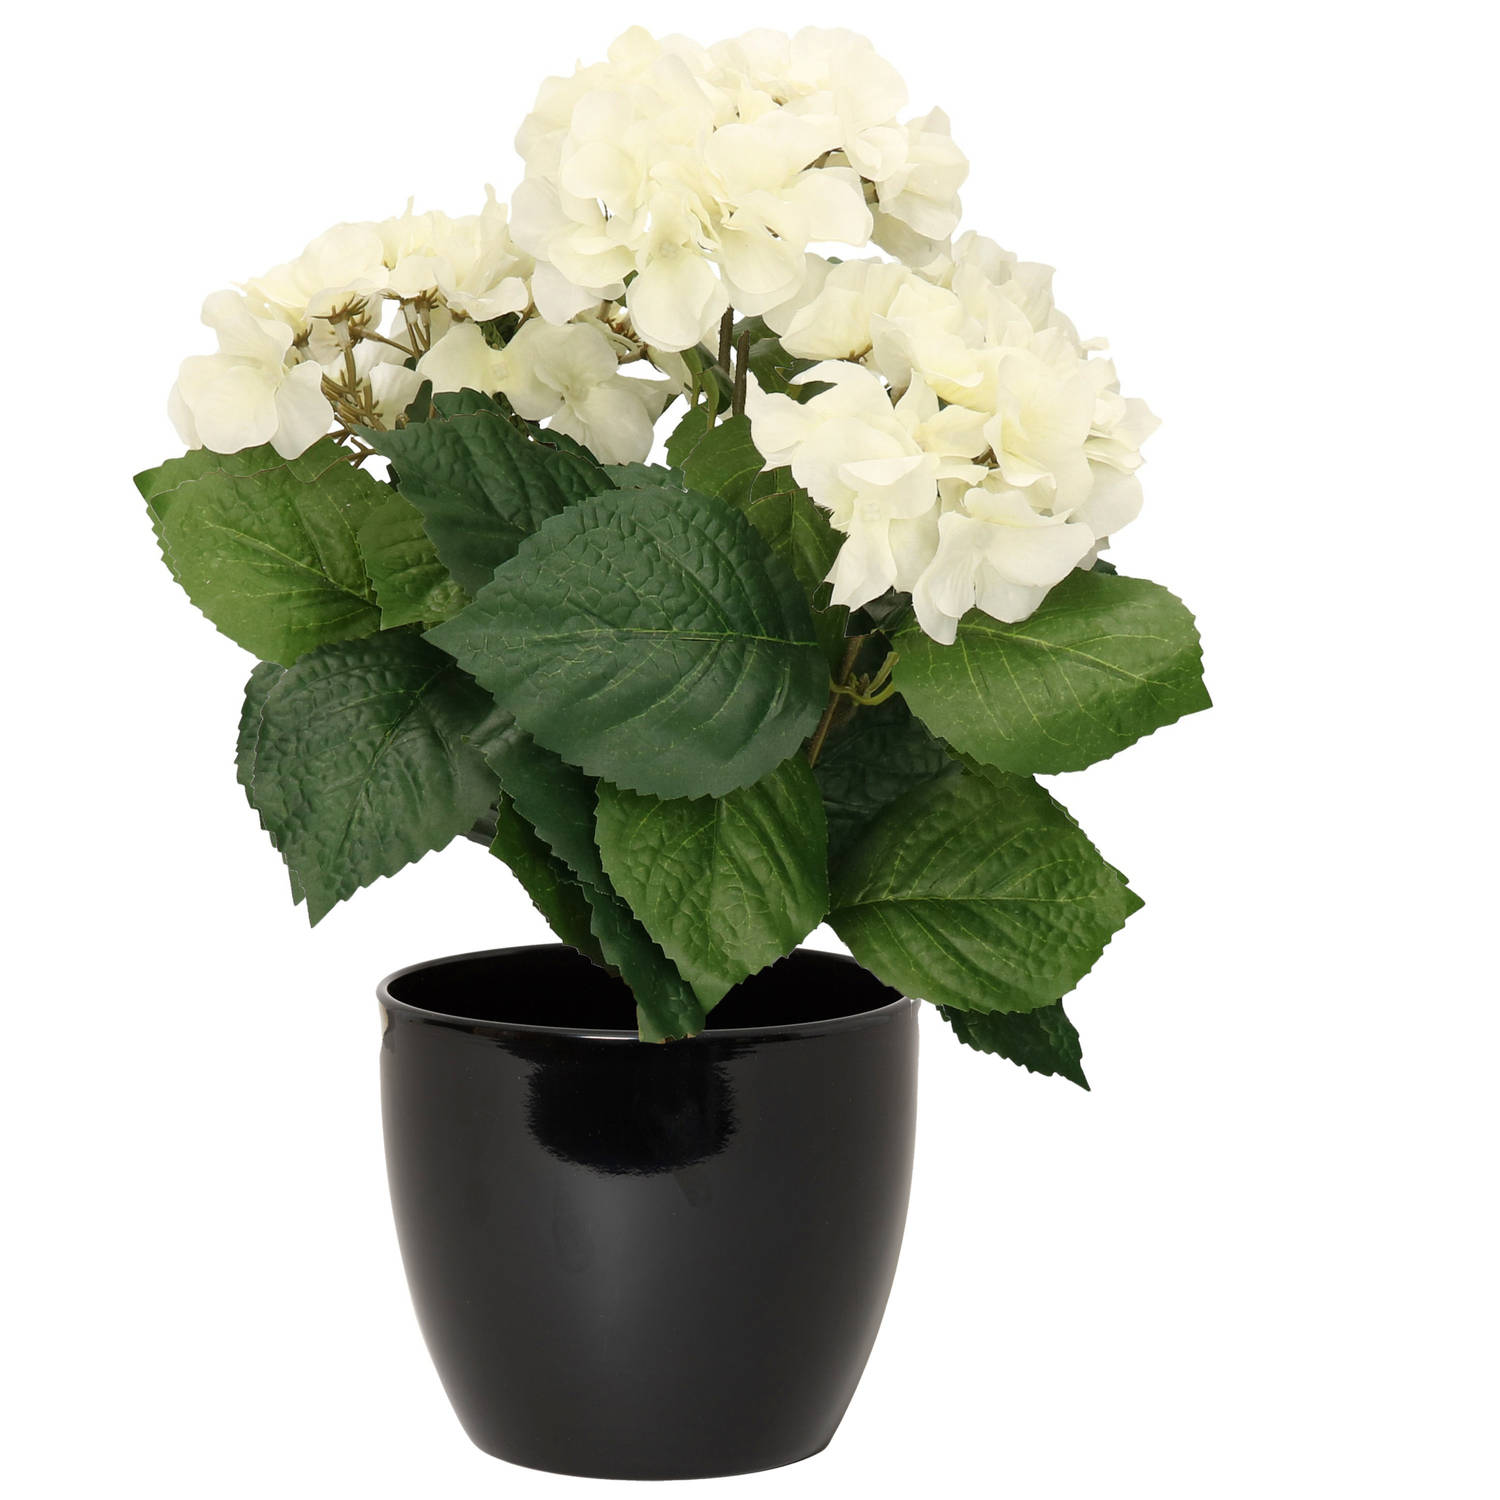 Hortensia kunstplant met bloemen wit in pot zwart 40 cm hoog Kunstplanten